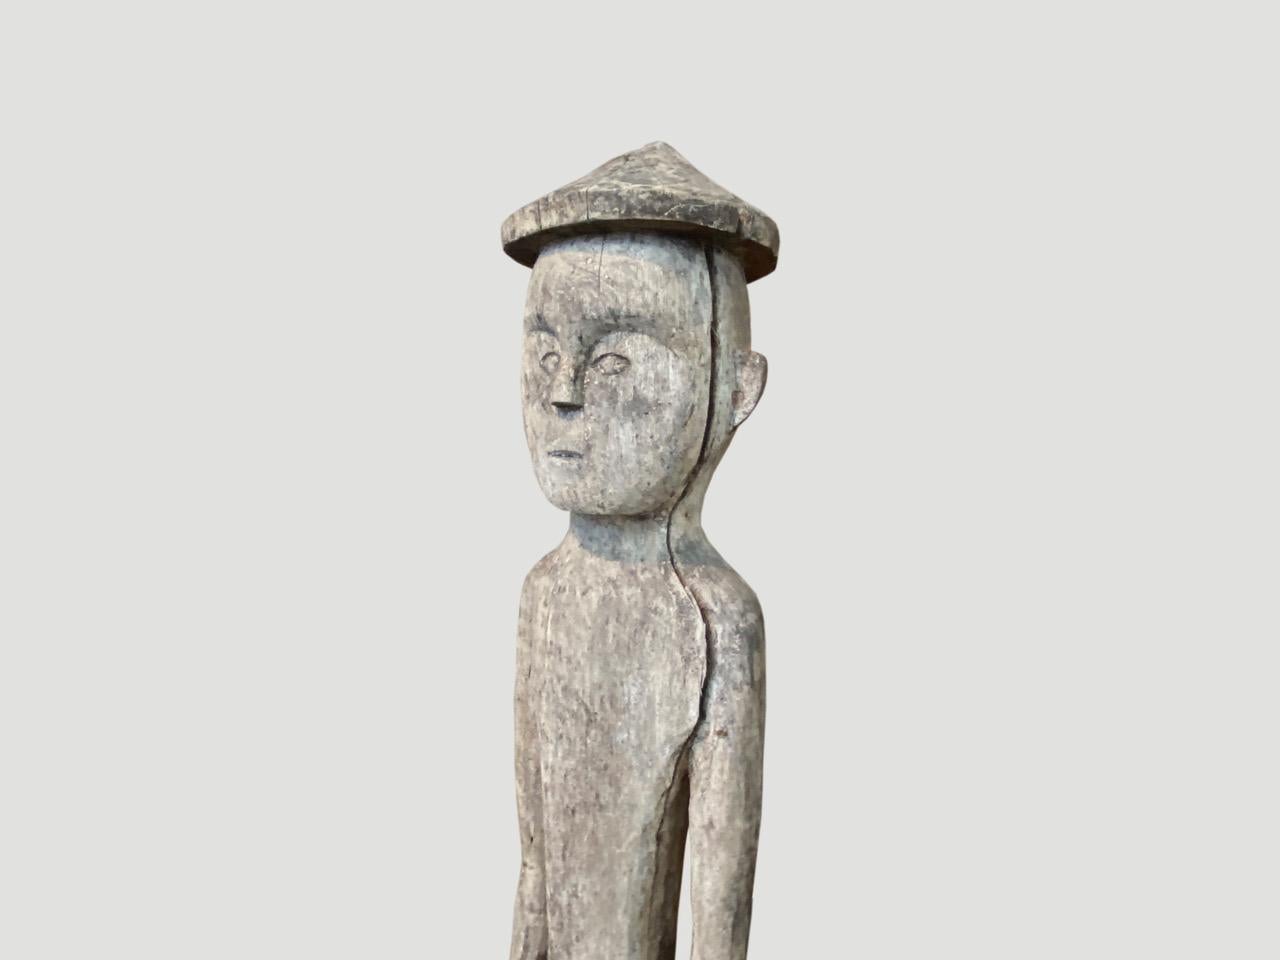 Metal Andrianna Shamaris Antique Teak Wood Statue from Borneo